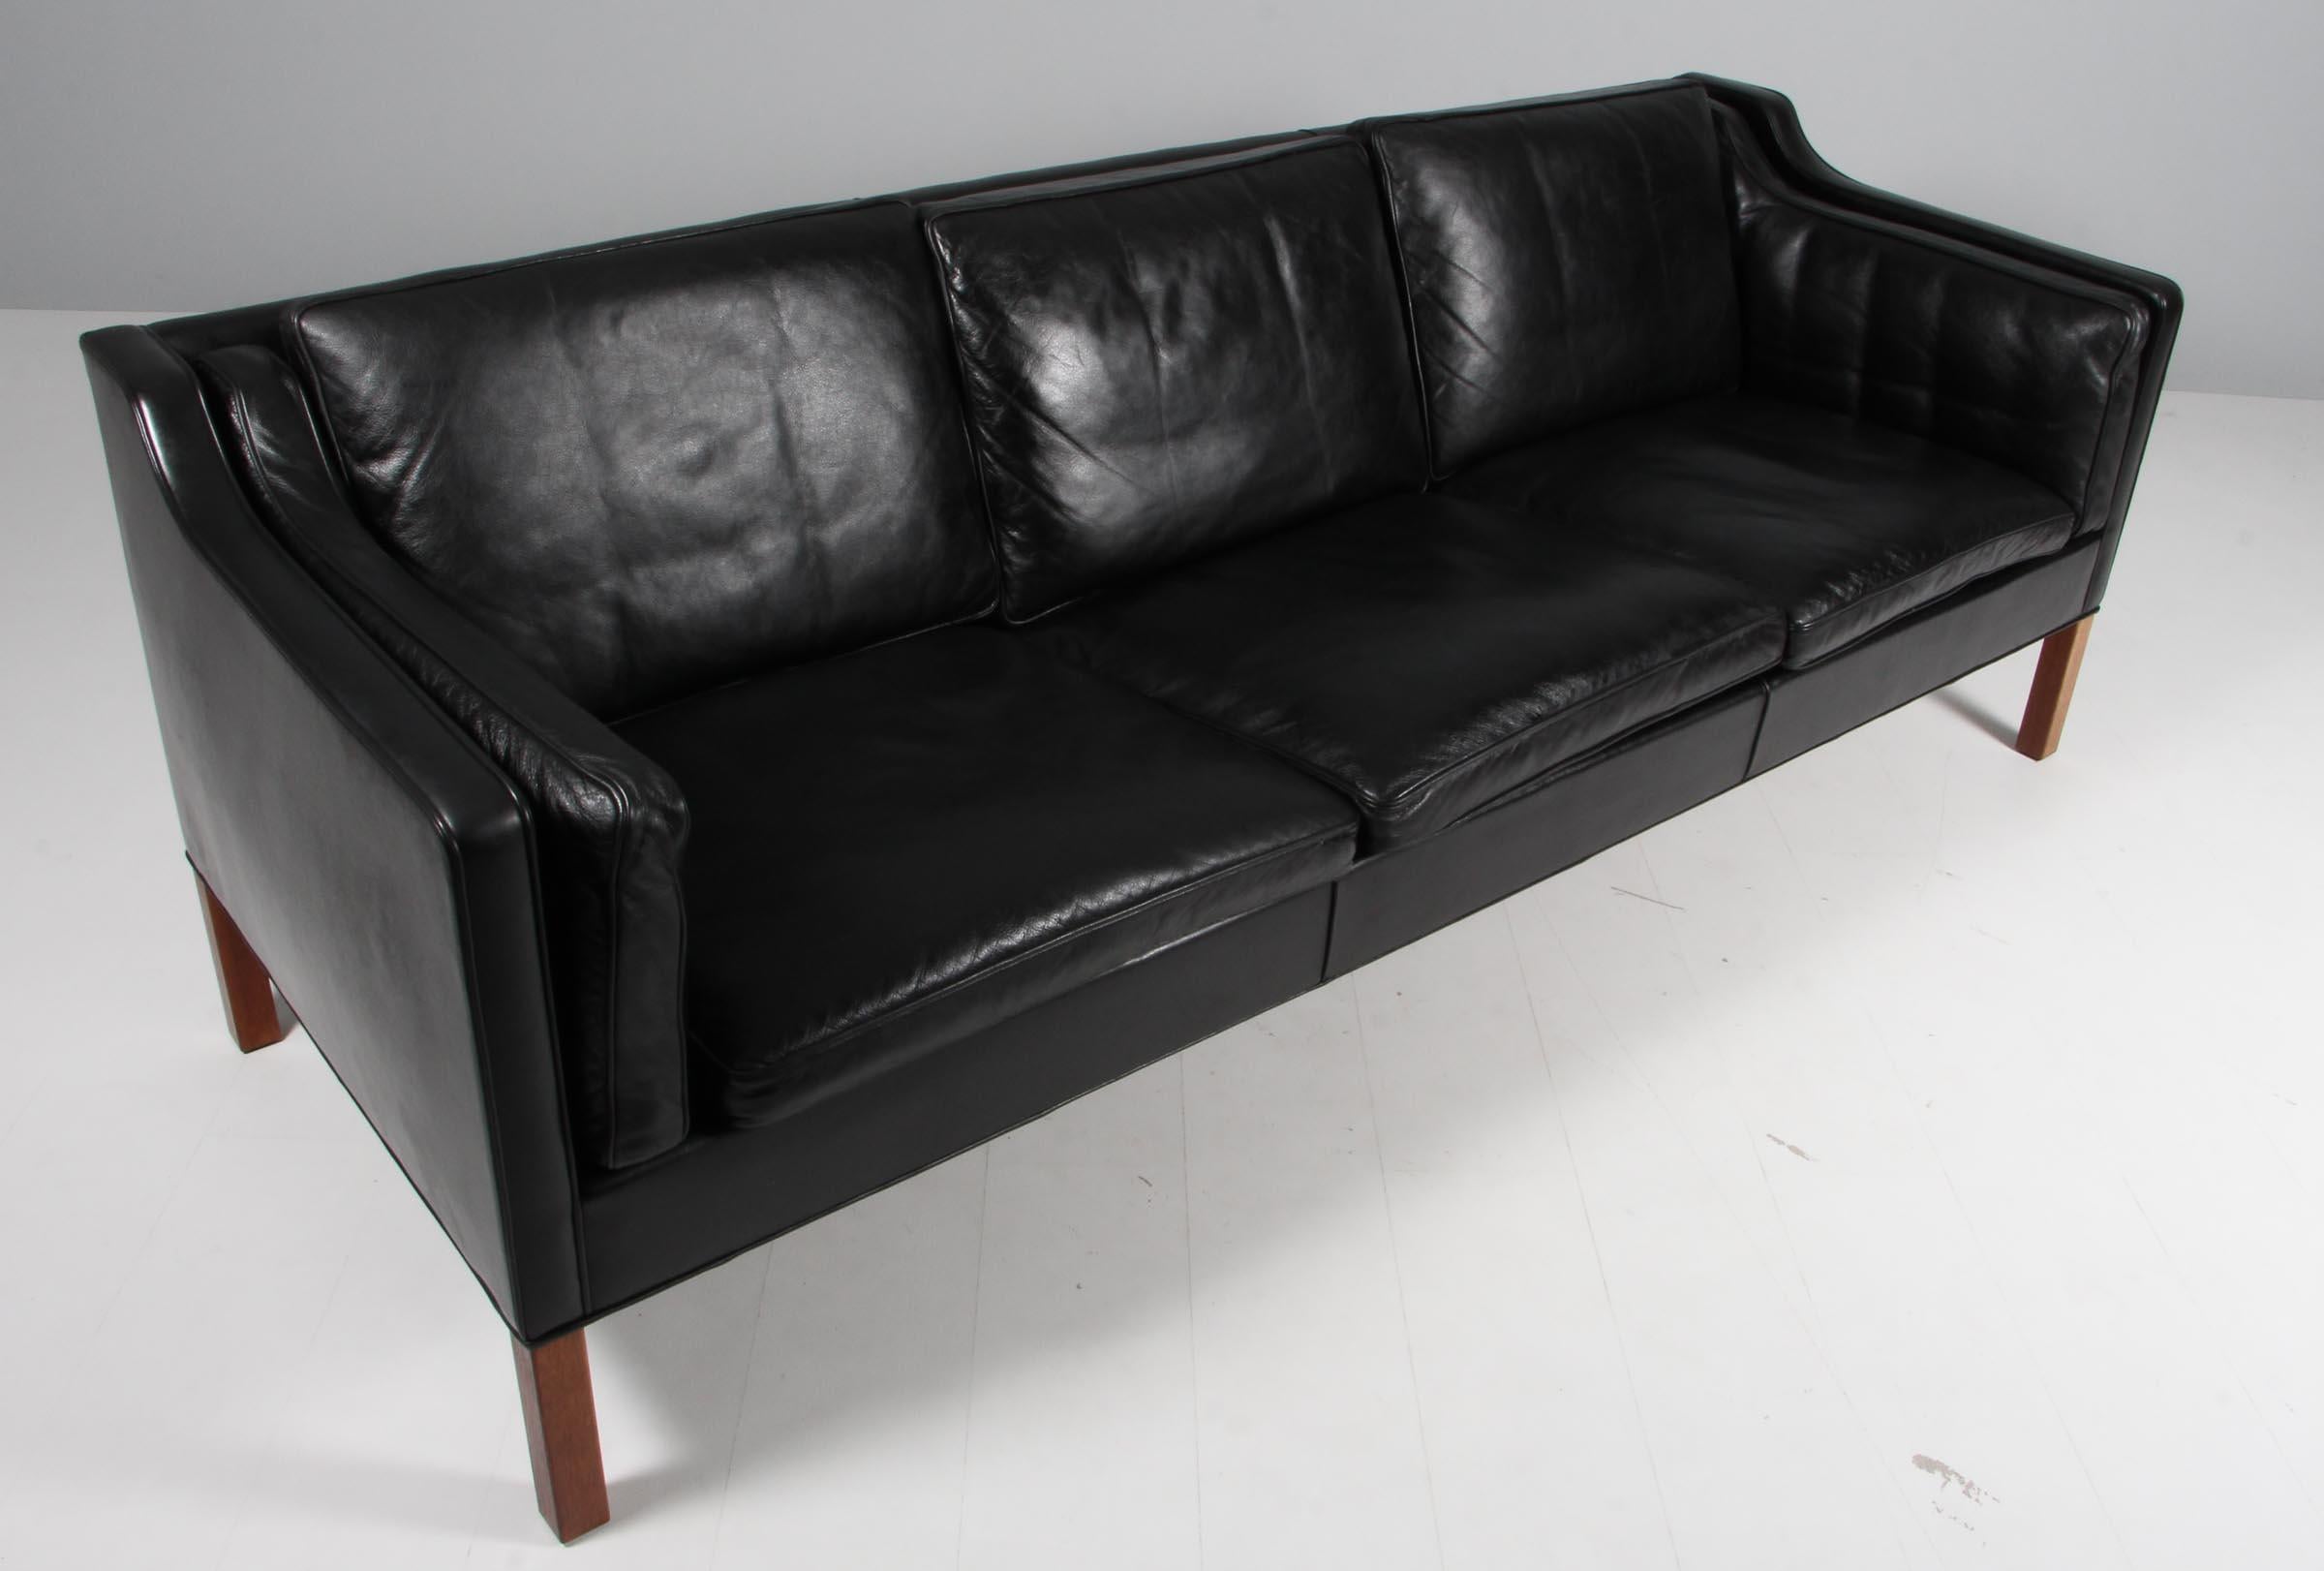 Dreisitziges Sofa von Børge Mogensen mit originalem, patiniertem, schwarzem Lederbezug.

Beine aus Teakholz.

Modell 2213, hergestellt von Fredericia Furniture.